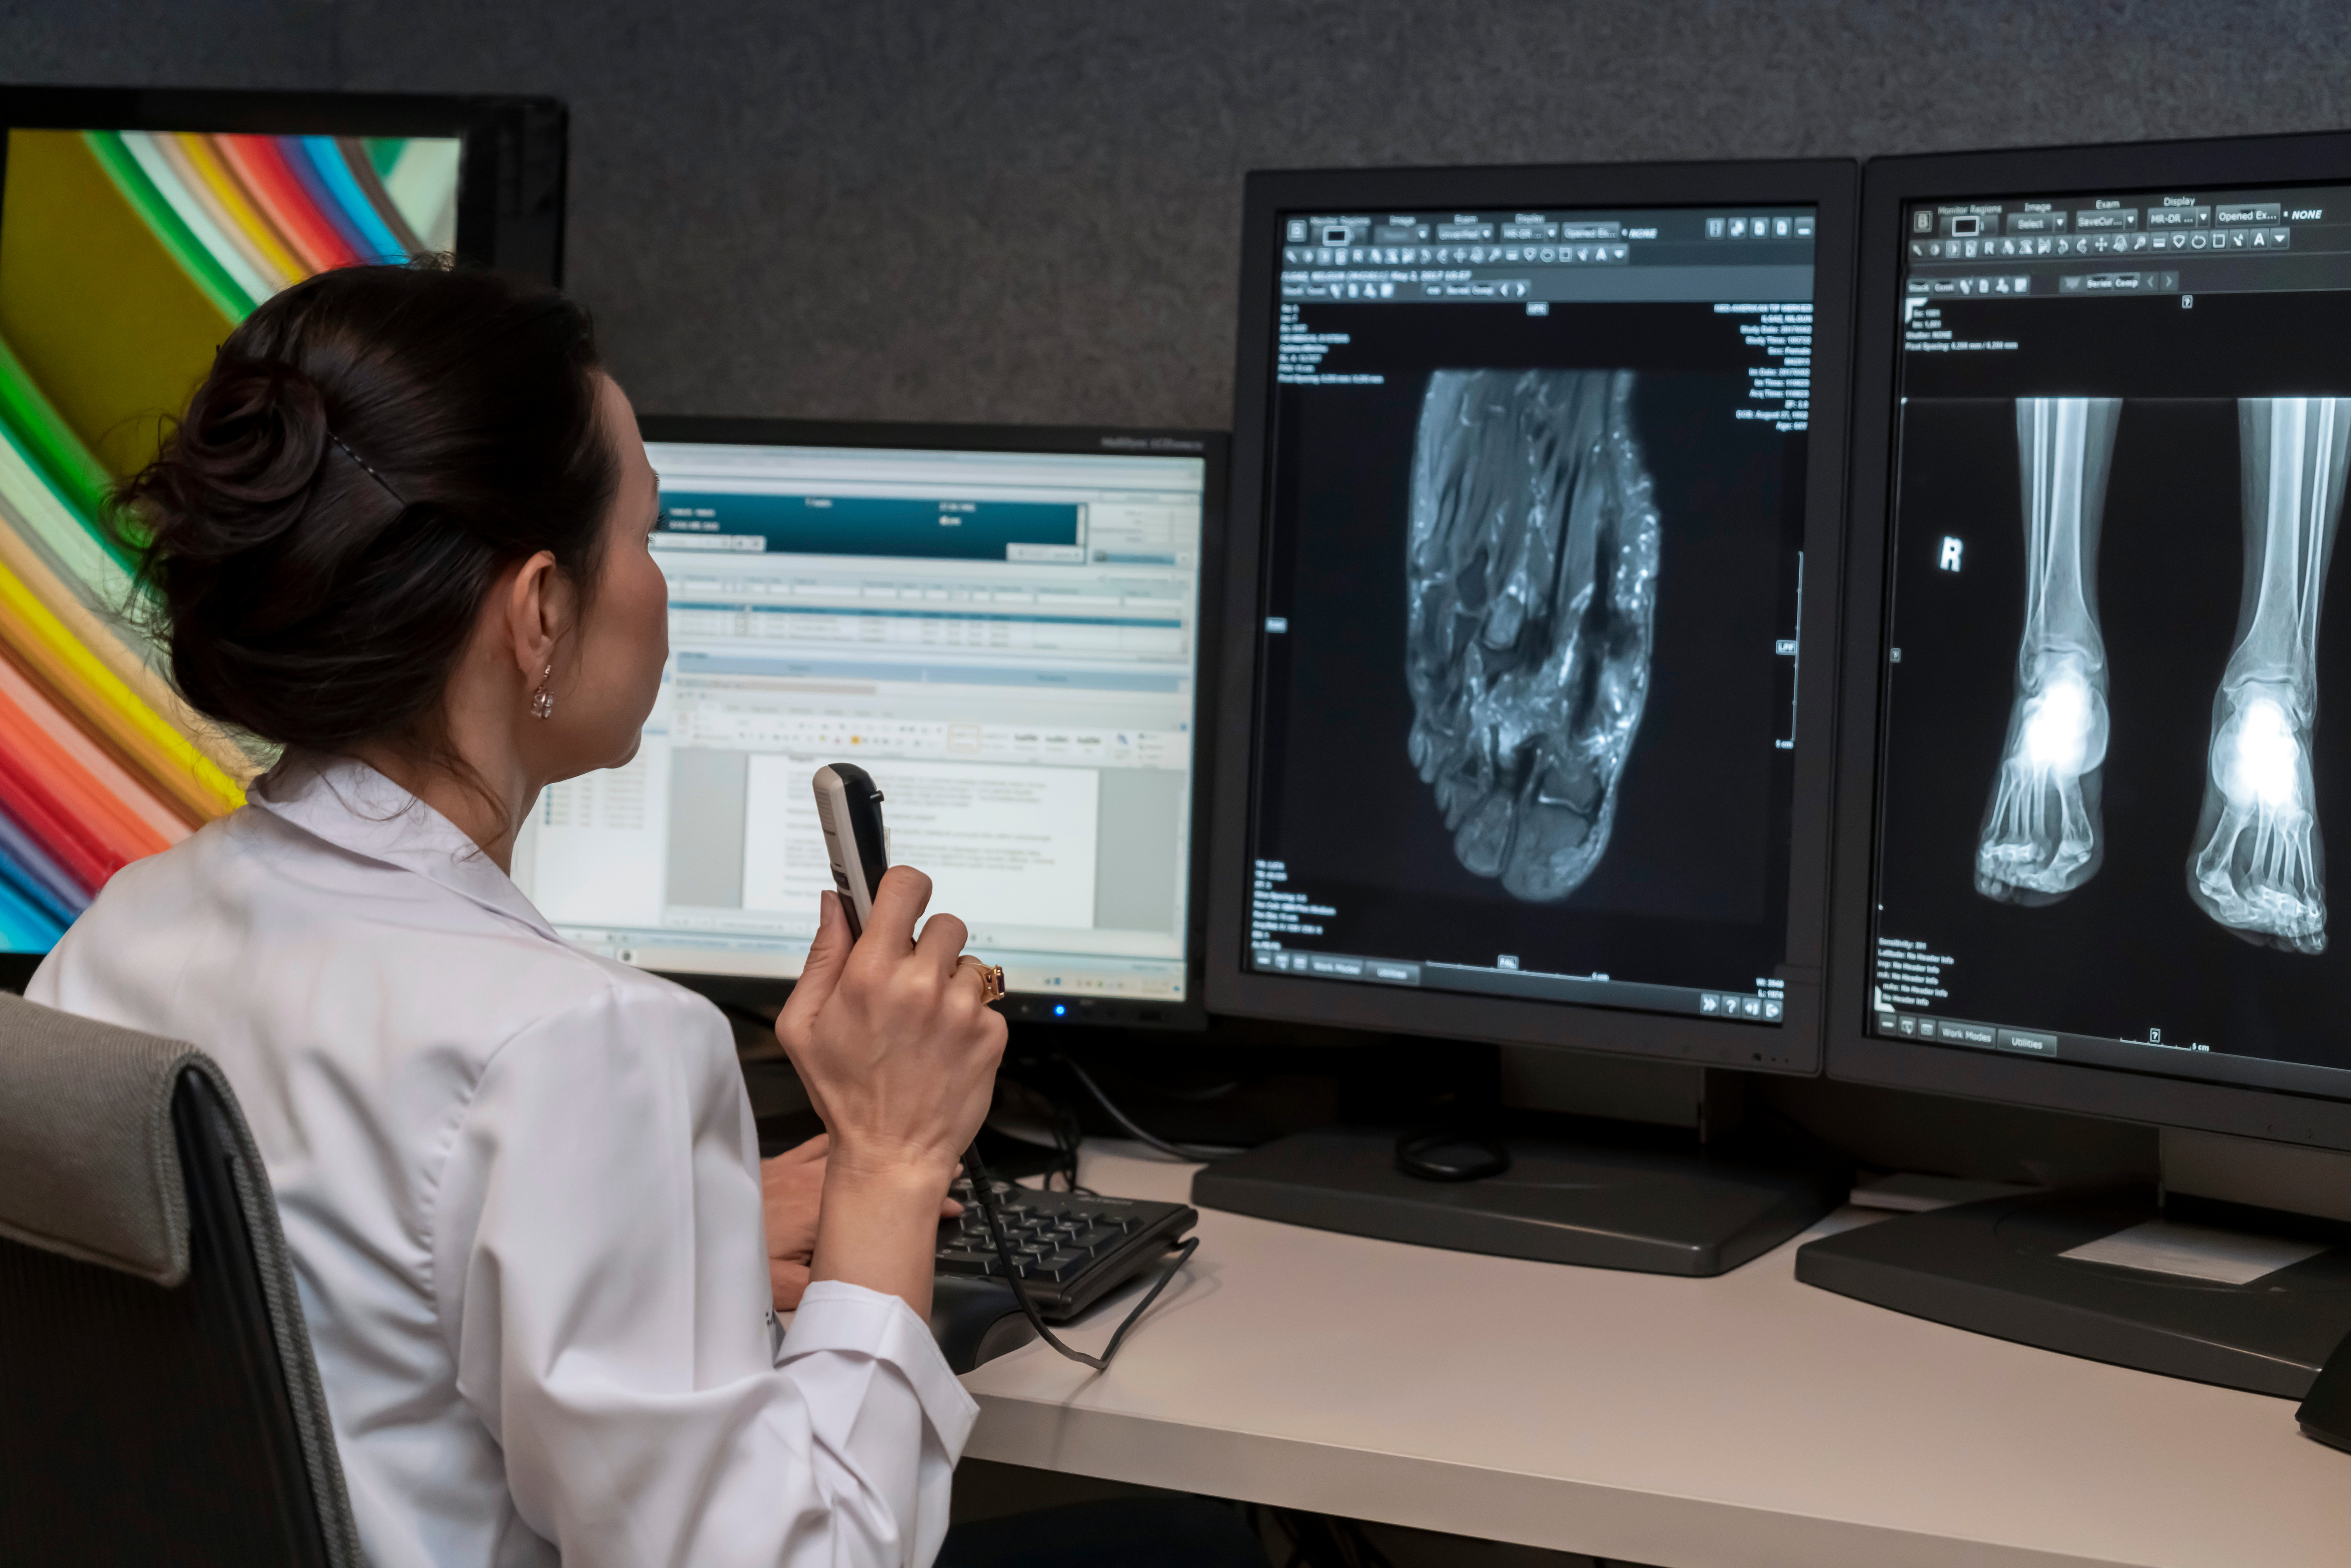 Migliorare l’accuratezza delle immagini e dei referti di radiologia grazie all'Intelligenza Artificiale